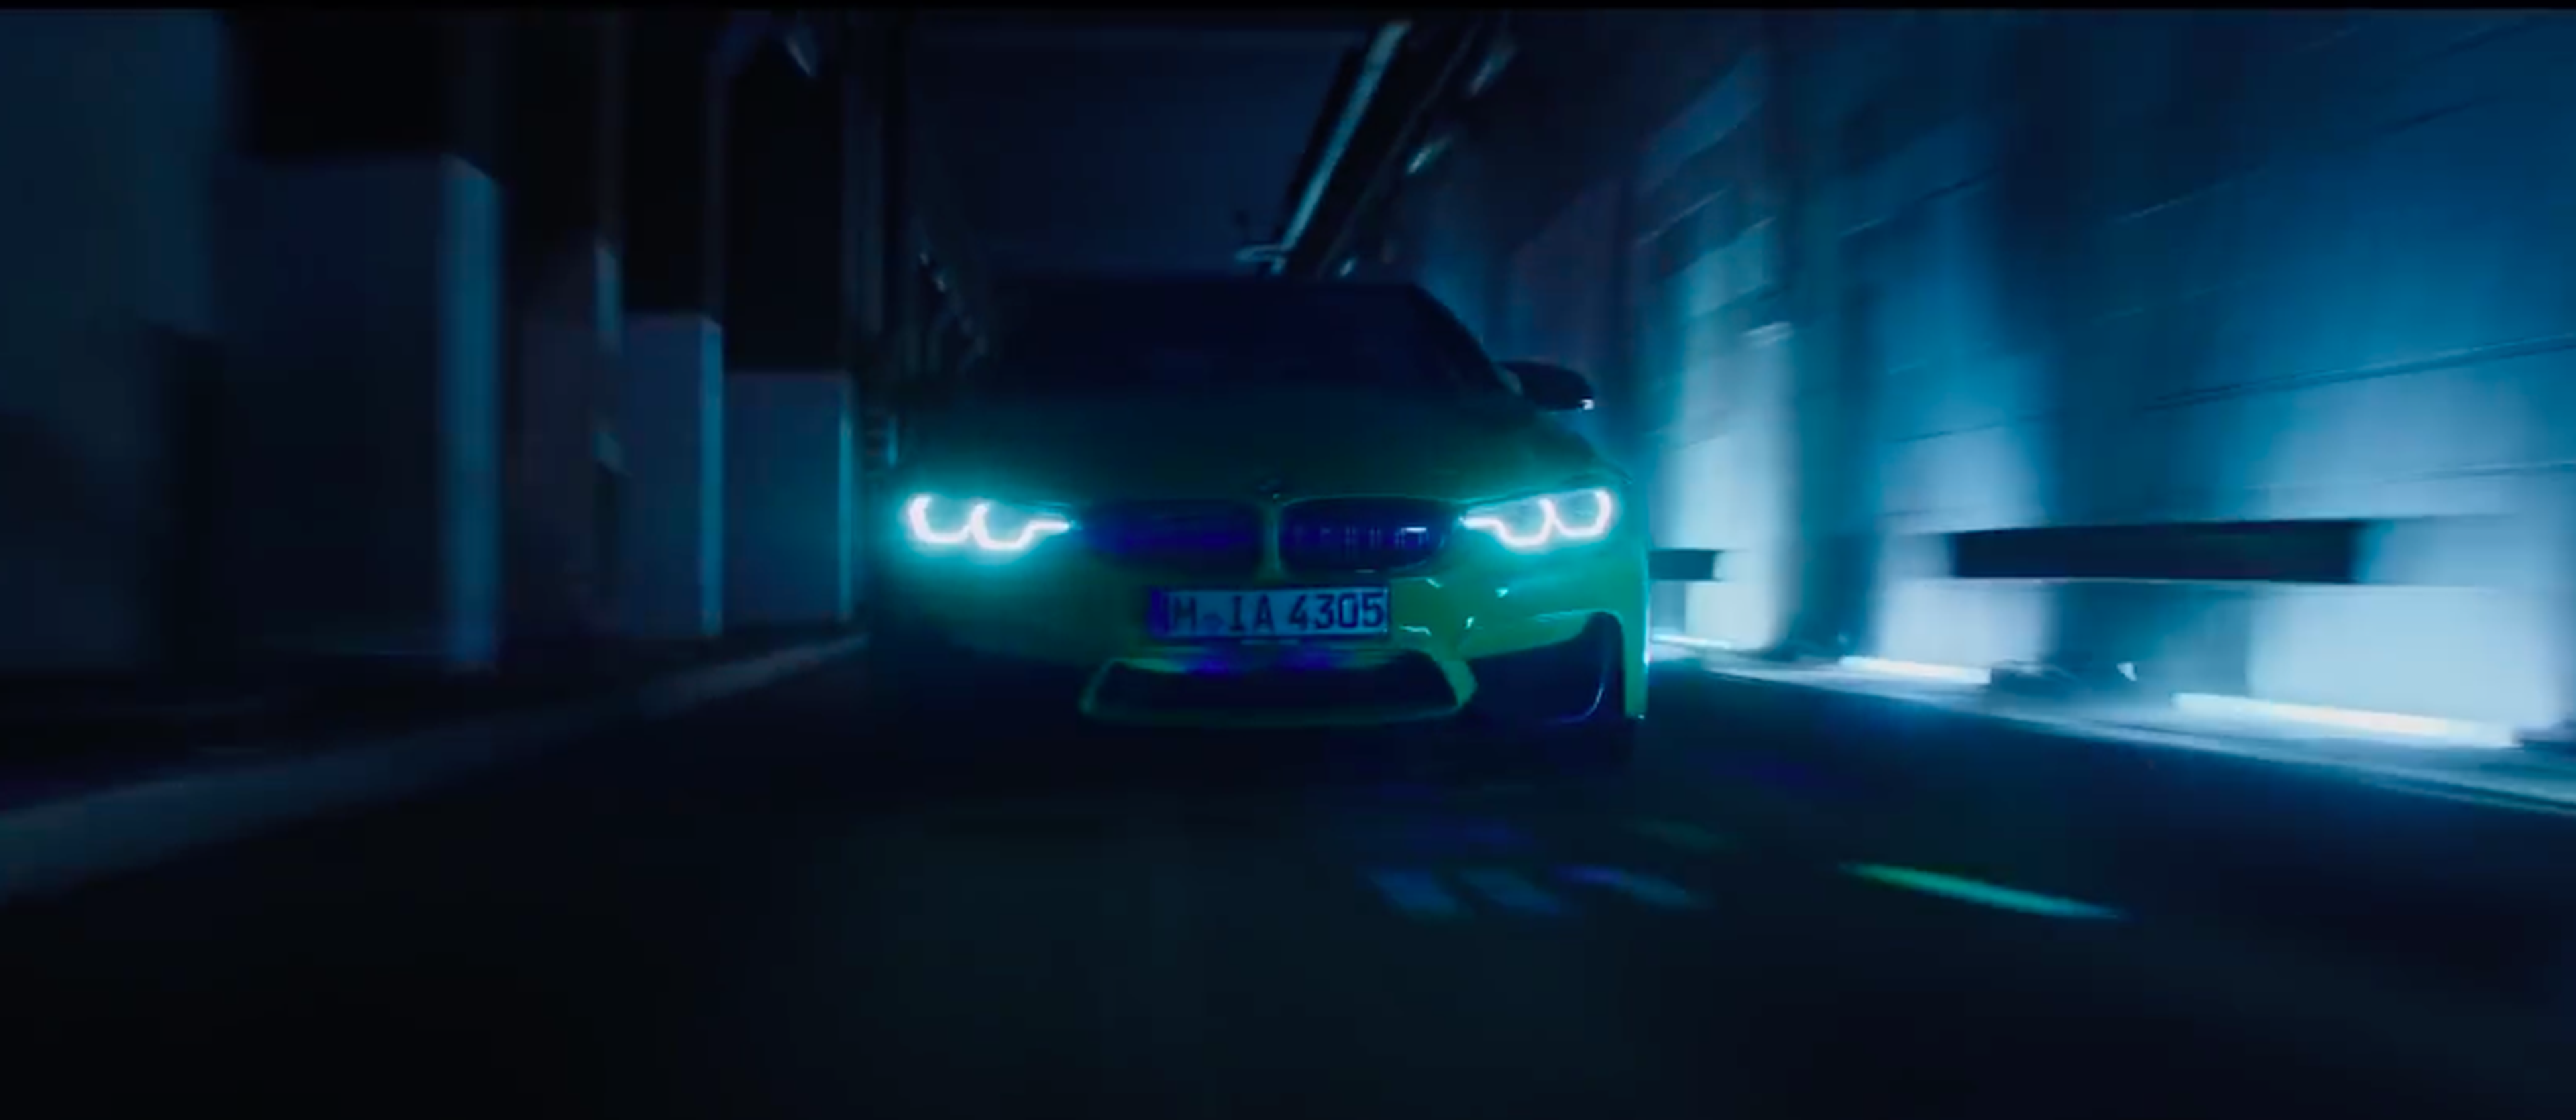 VÍDEO: este es uno de los mejores anuncios de BMW que has visto